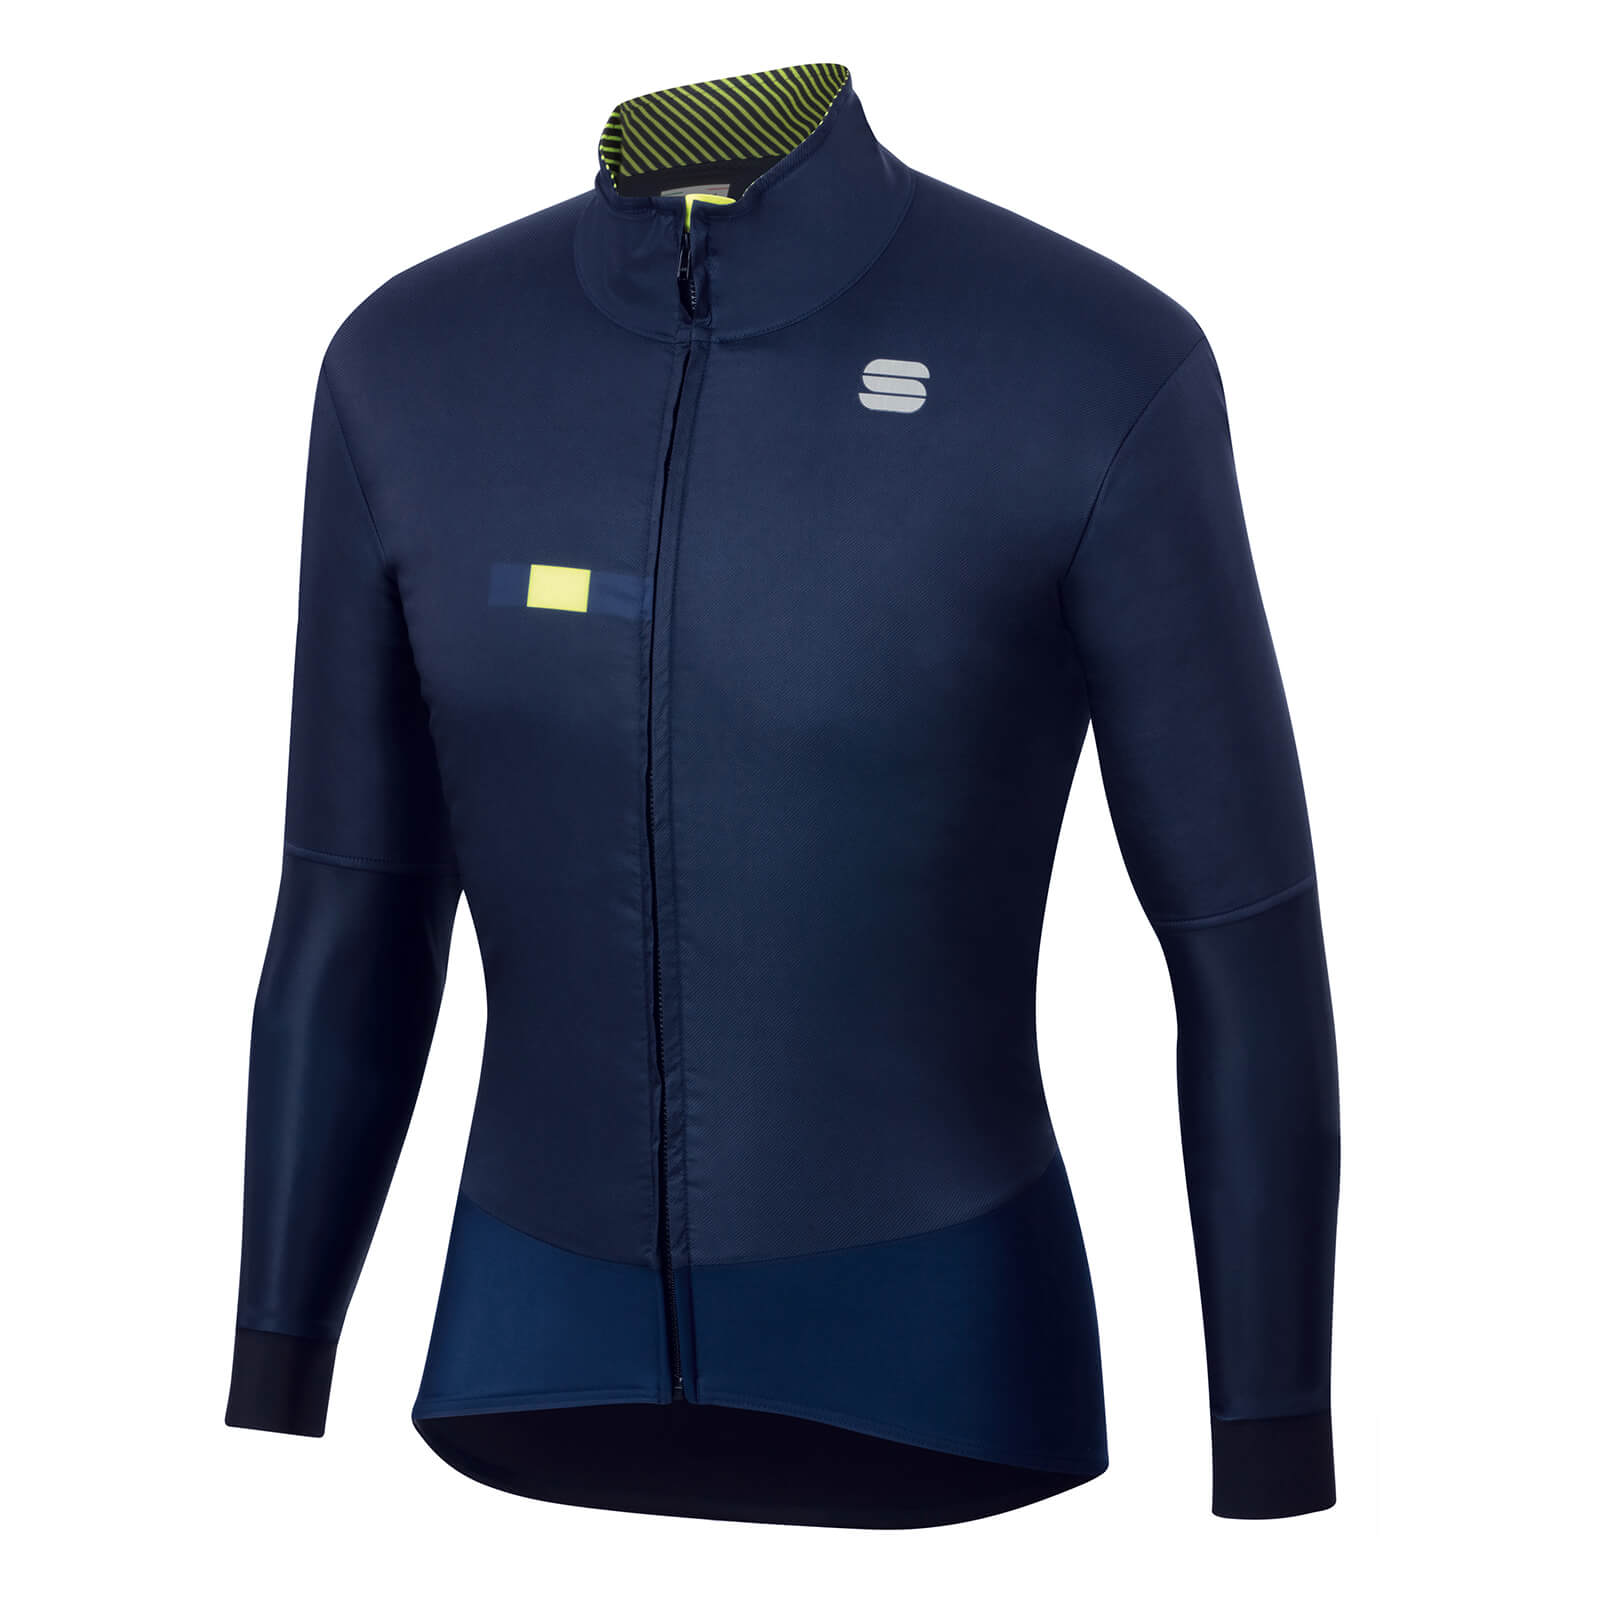 Sportful Bodyfit Pro Jacket - L - Blue/Yellow Fluo;